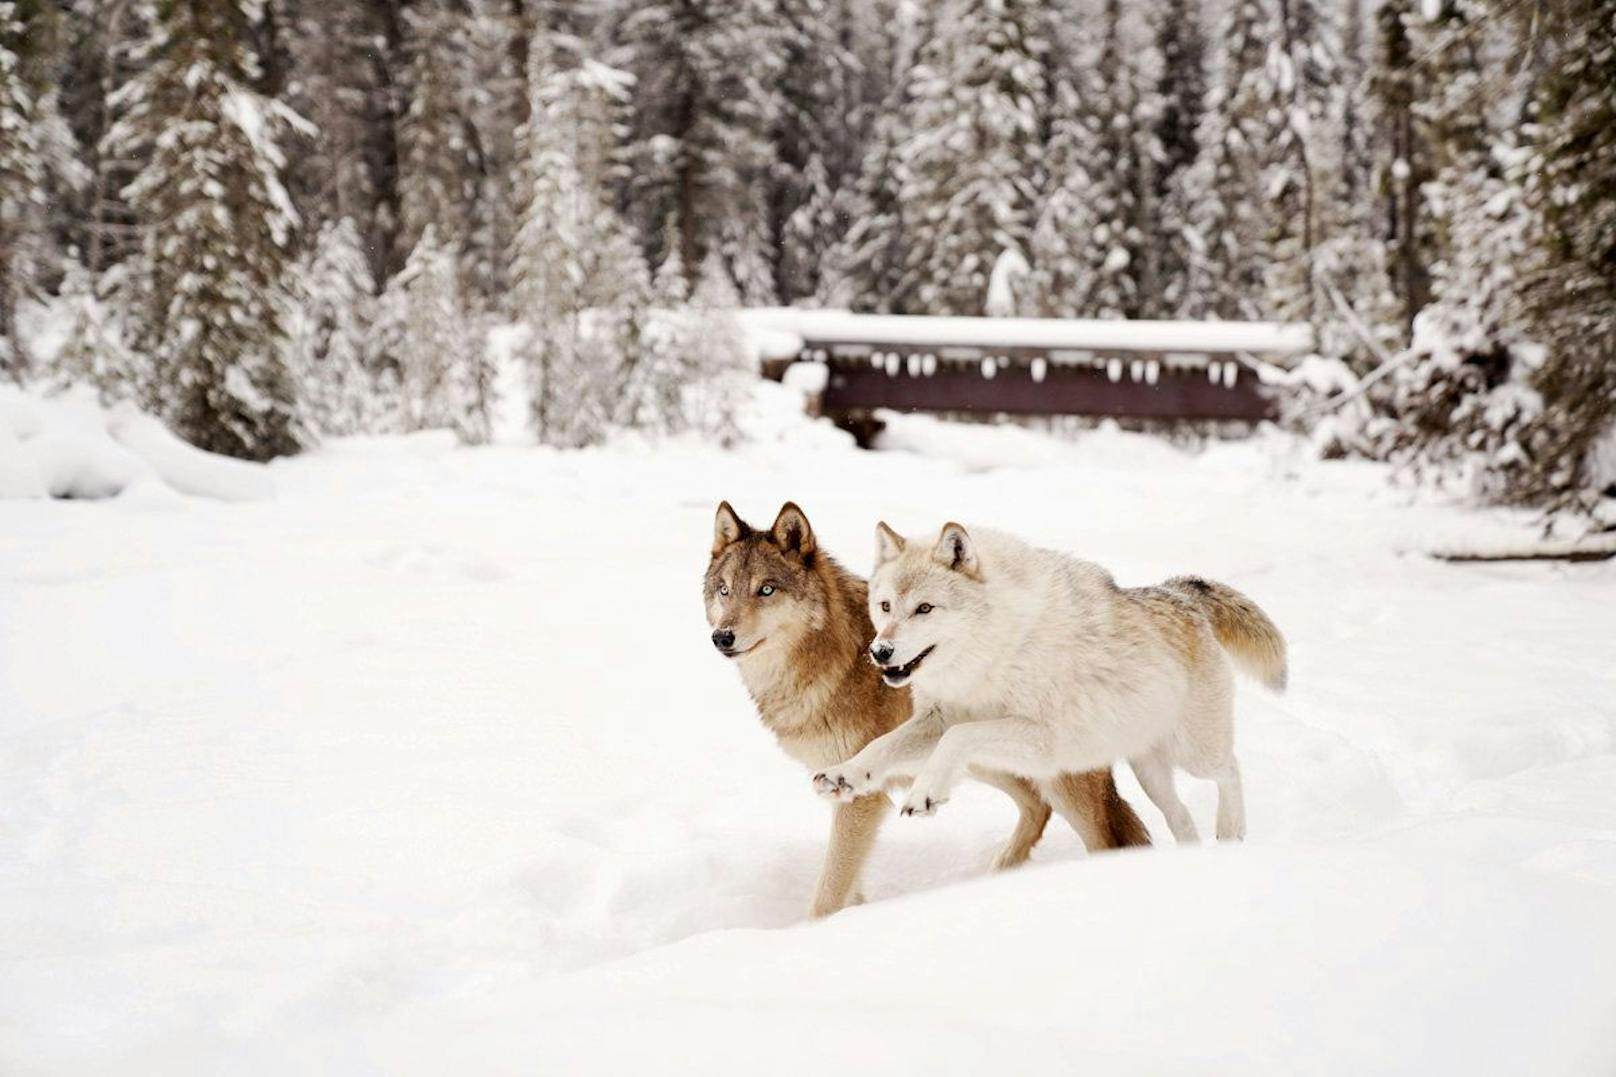 Das Northern Lights Wildlife Wolf Center besteht seit 2002 in Kanada. 